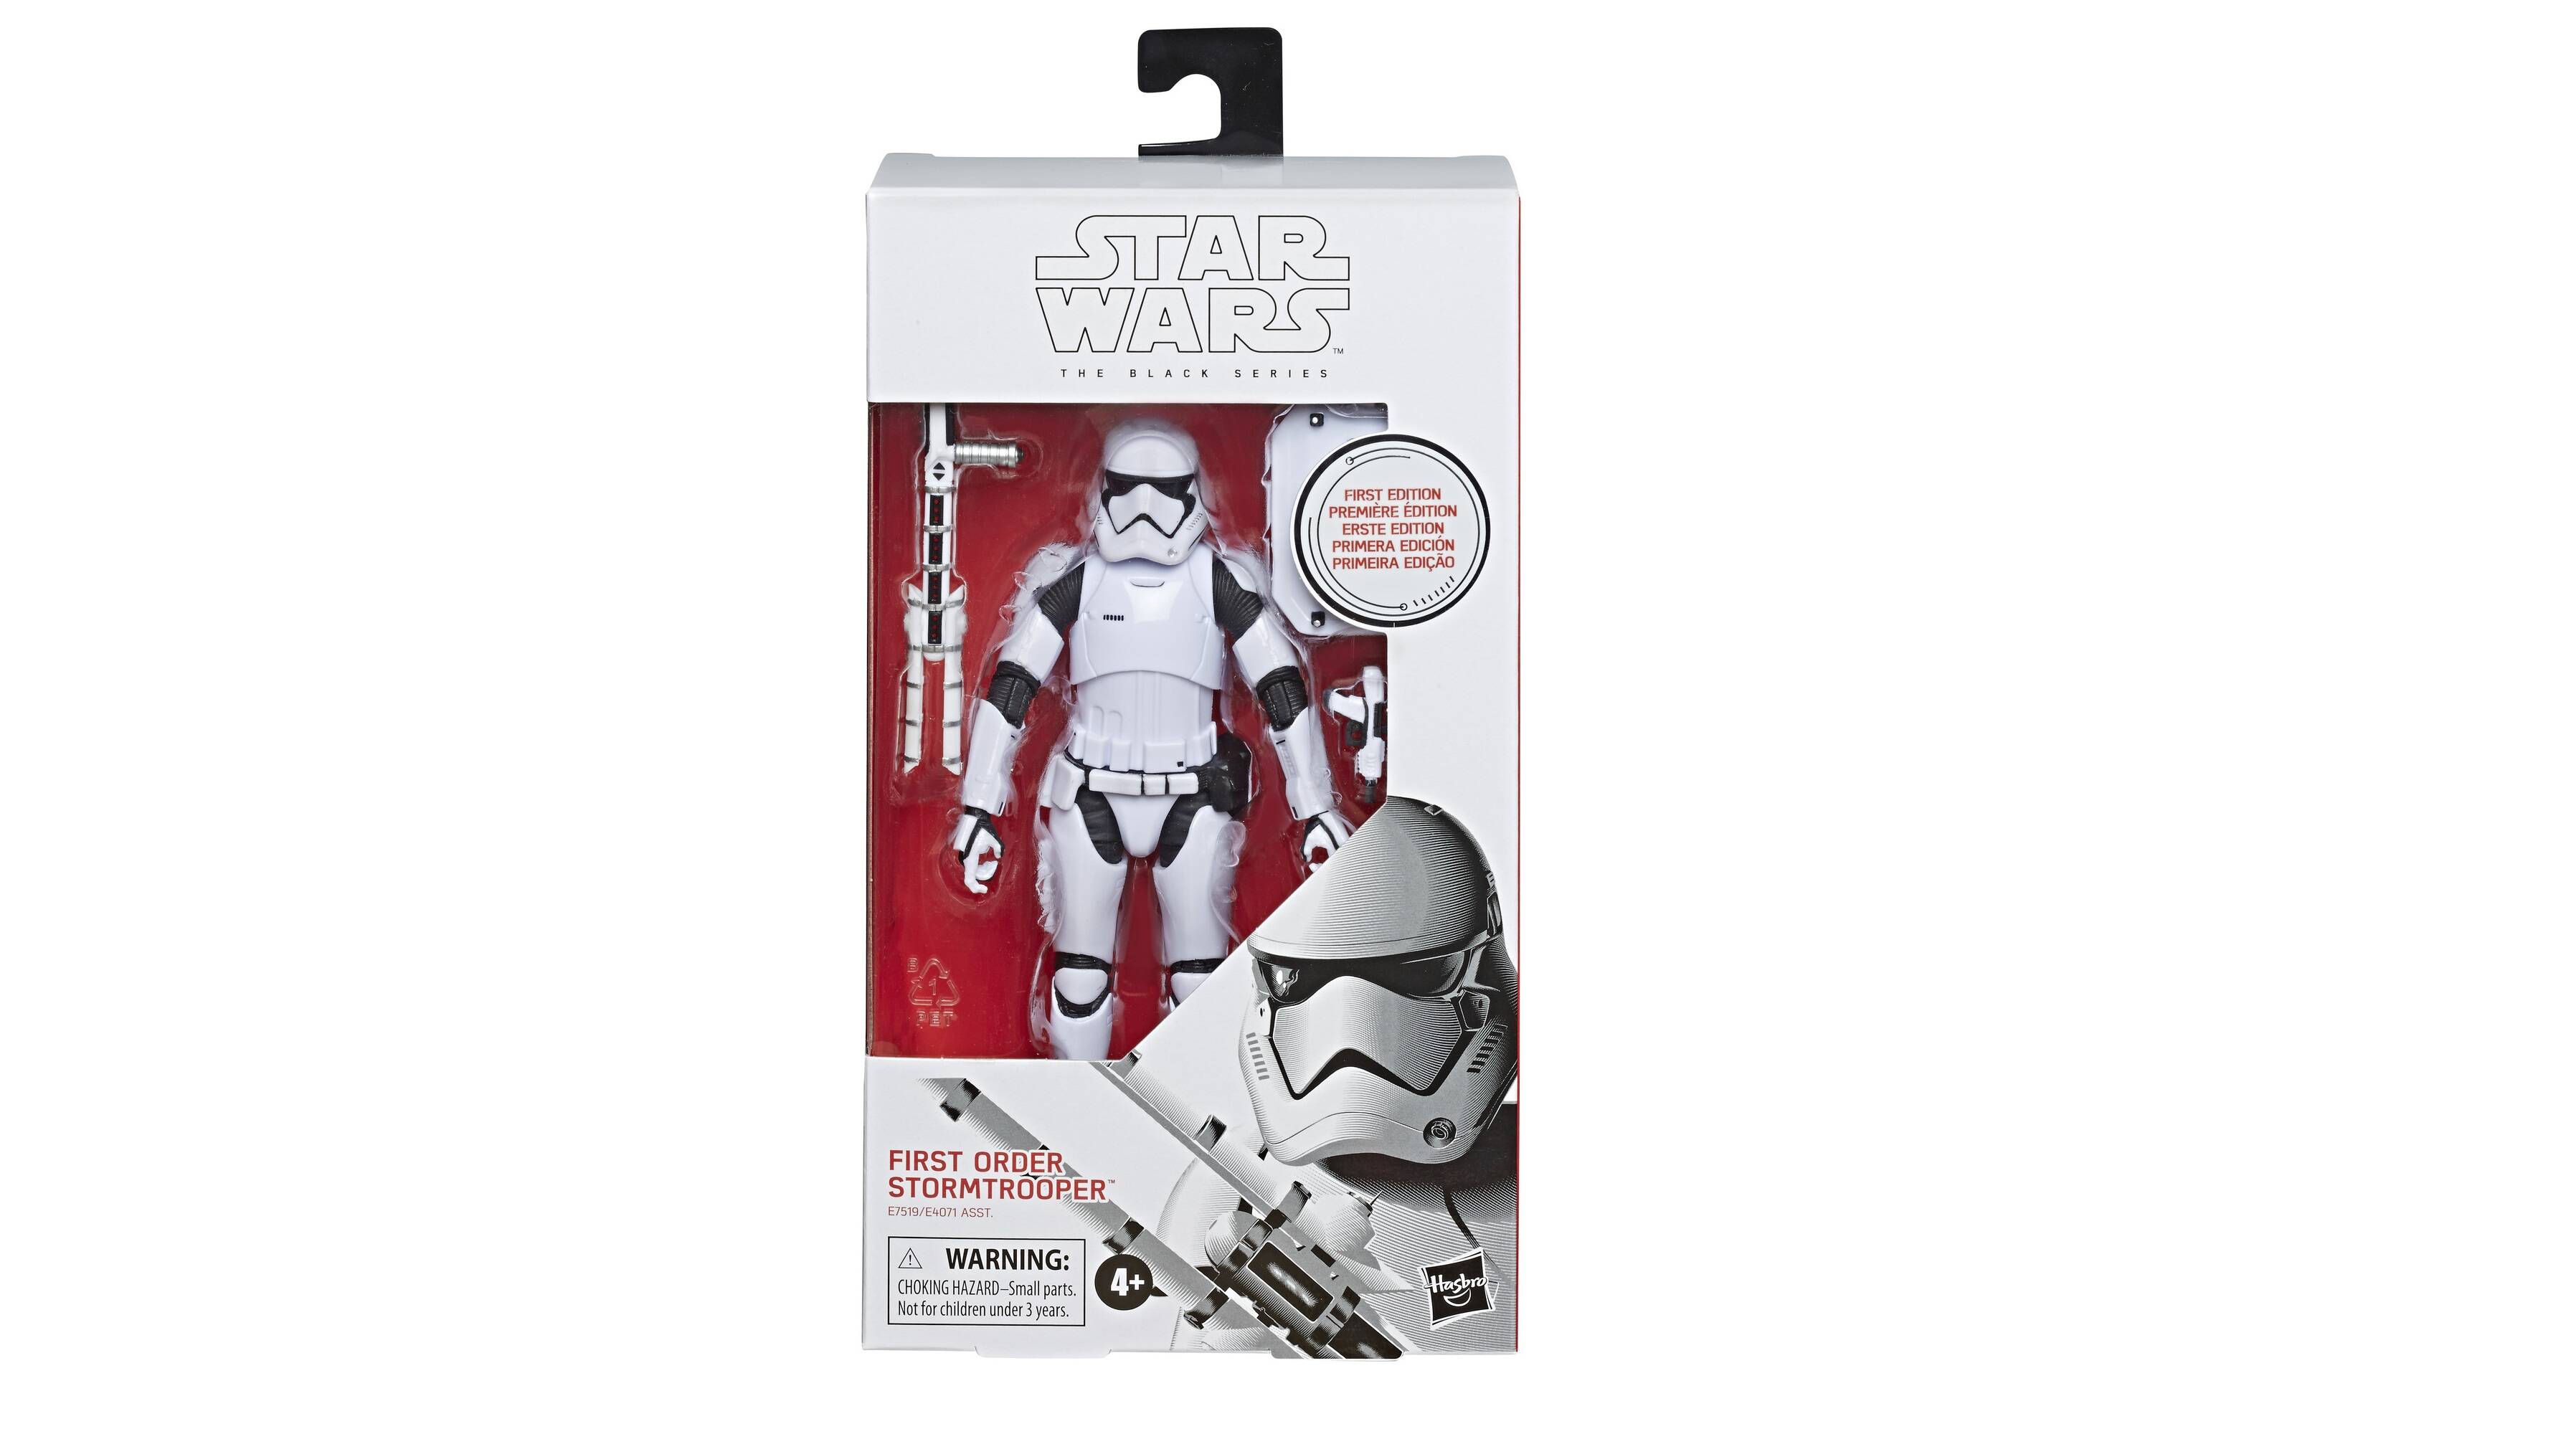 Boneco Star Wars – Hasbro por R$ 269,99. Foto: Divulgação